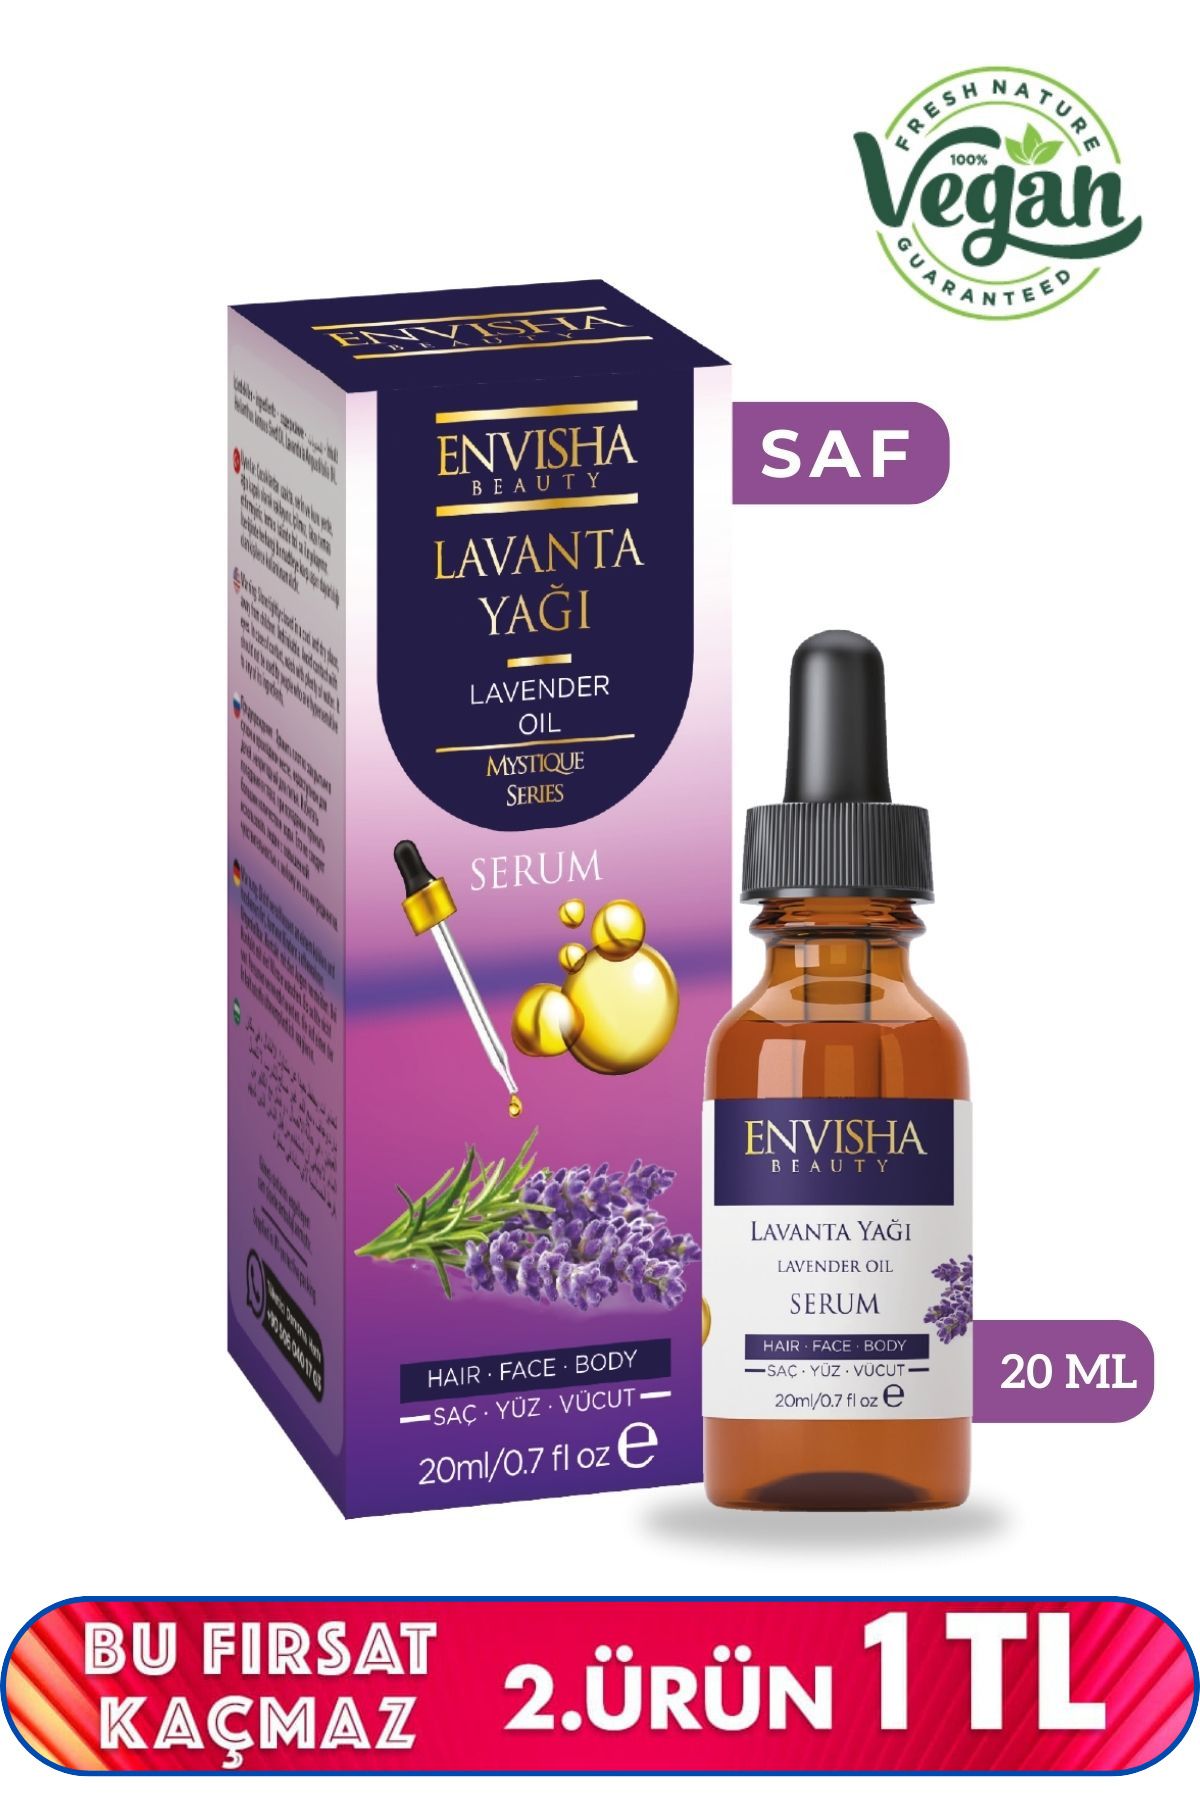 Envisha Beauty Lavanta Yağı %100 Doğal Bitkisel Yağ Lavender Oil 20 ML